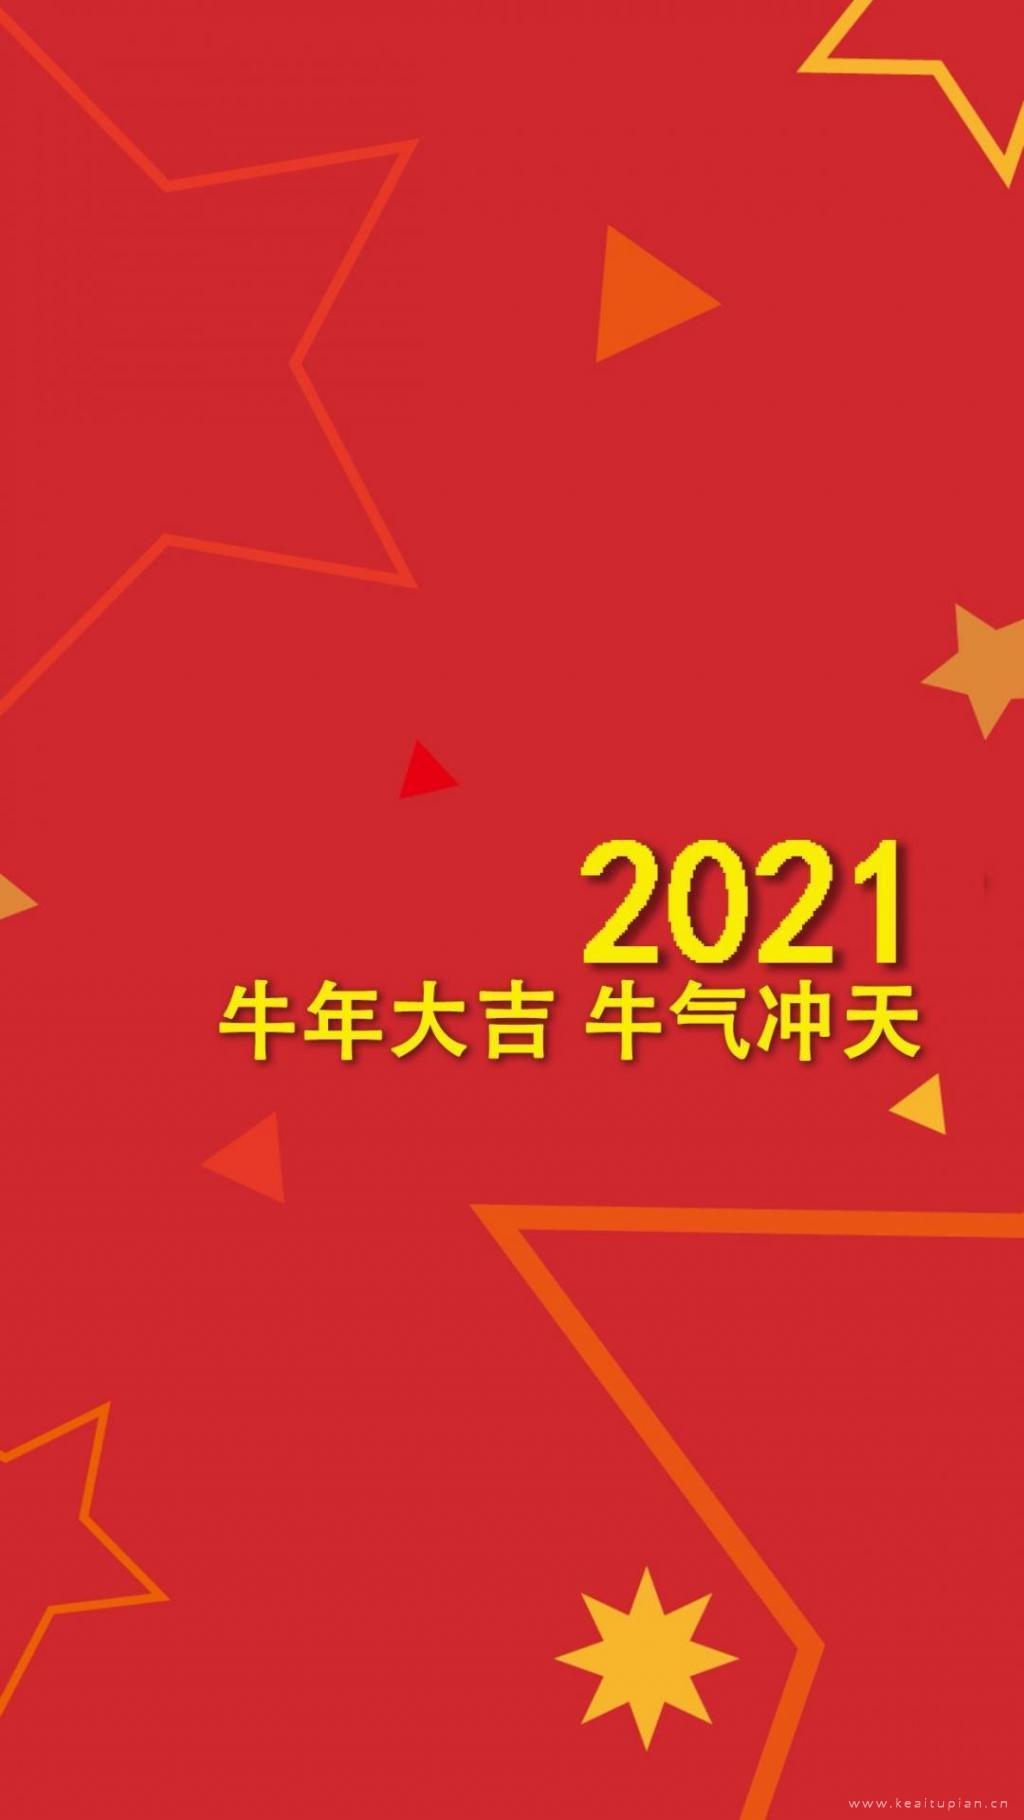 2021红色喜庆简约背景图高清手机壁纸